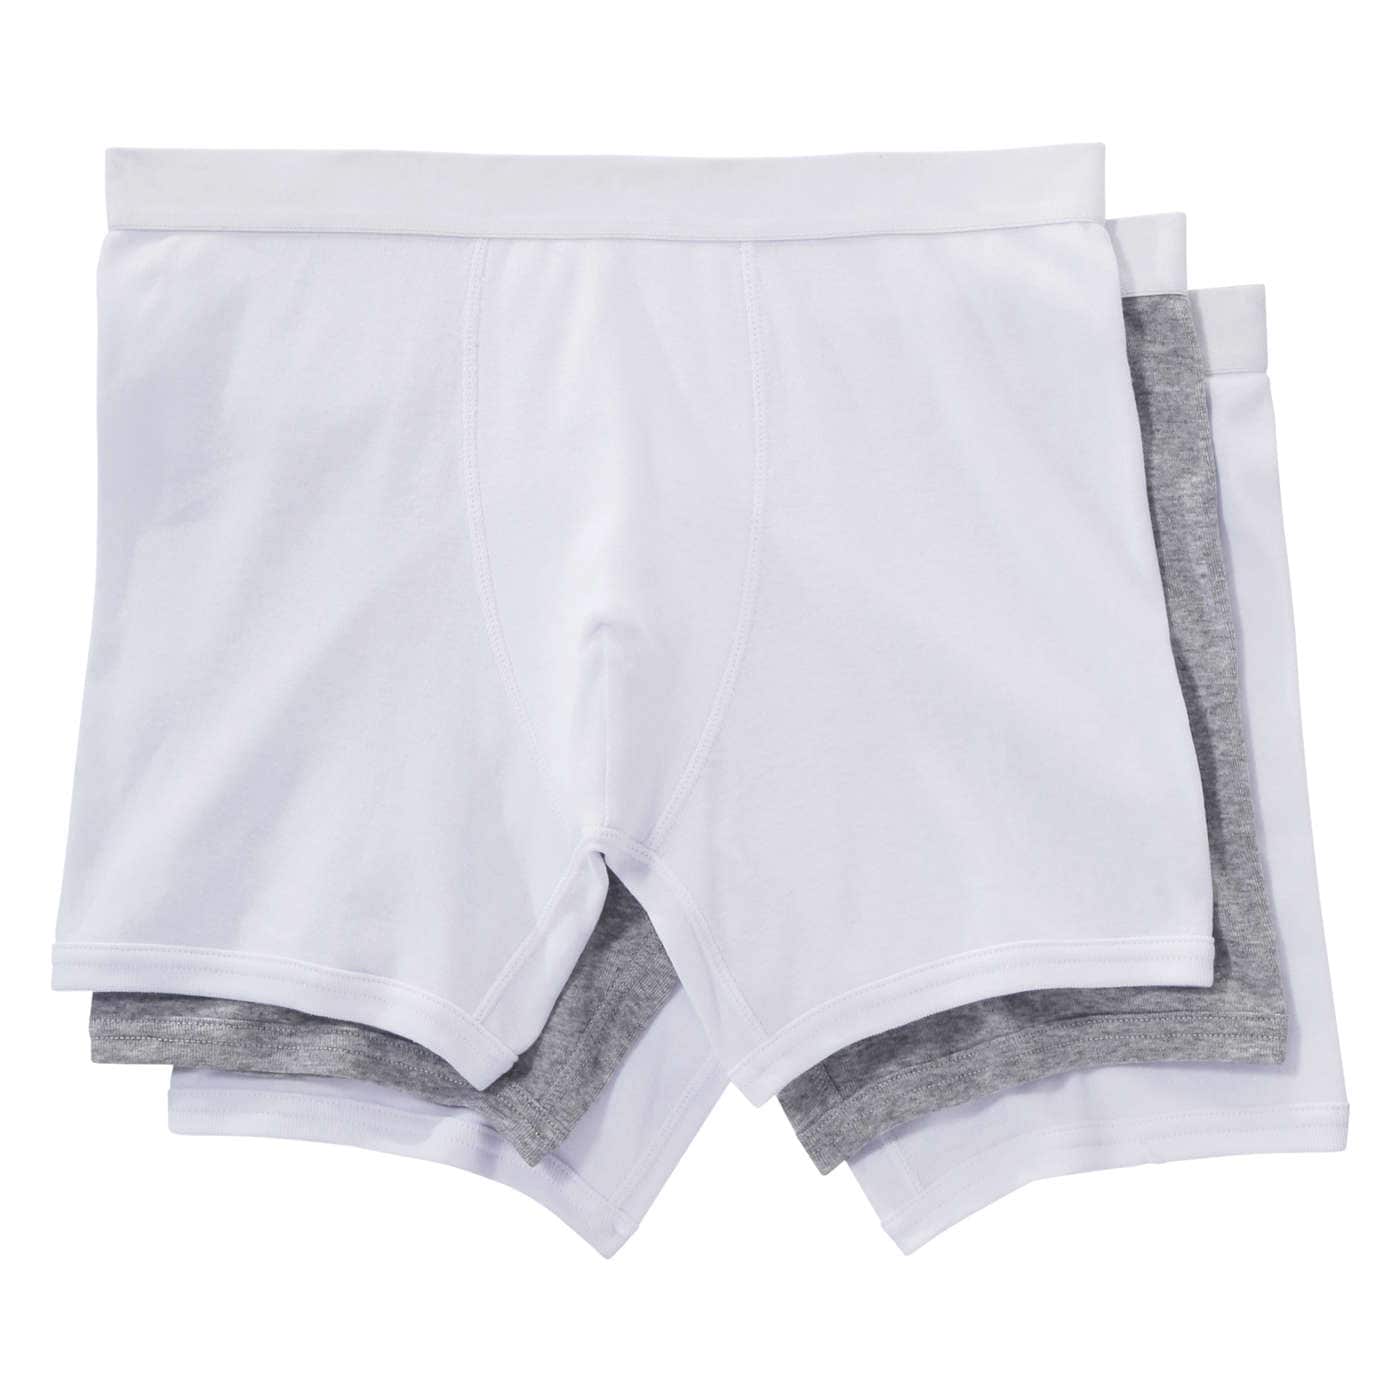 Fresh White Super Soft Mens Boxer Shorts  Box Menswear and Underwear –  boxmenswear